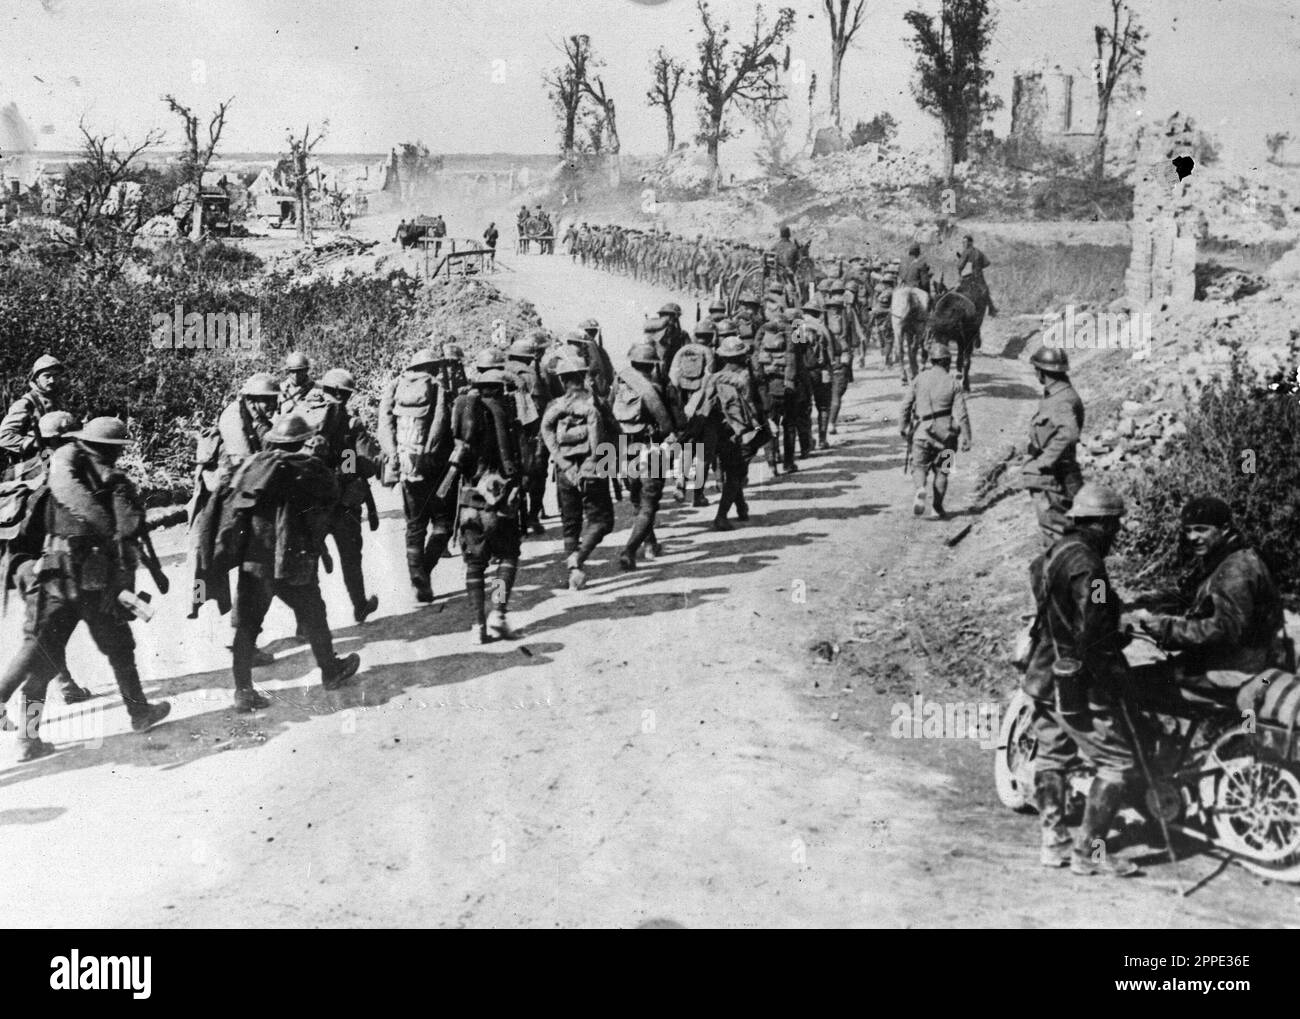 Soldati americani marciano in Germania nel 1919 durante l'occupazione alleata della Renania. Dopo il WW1 gli Alleati occuparono la riva sinistra del Reno per 11 anni. Foto Stock